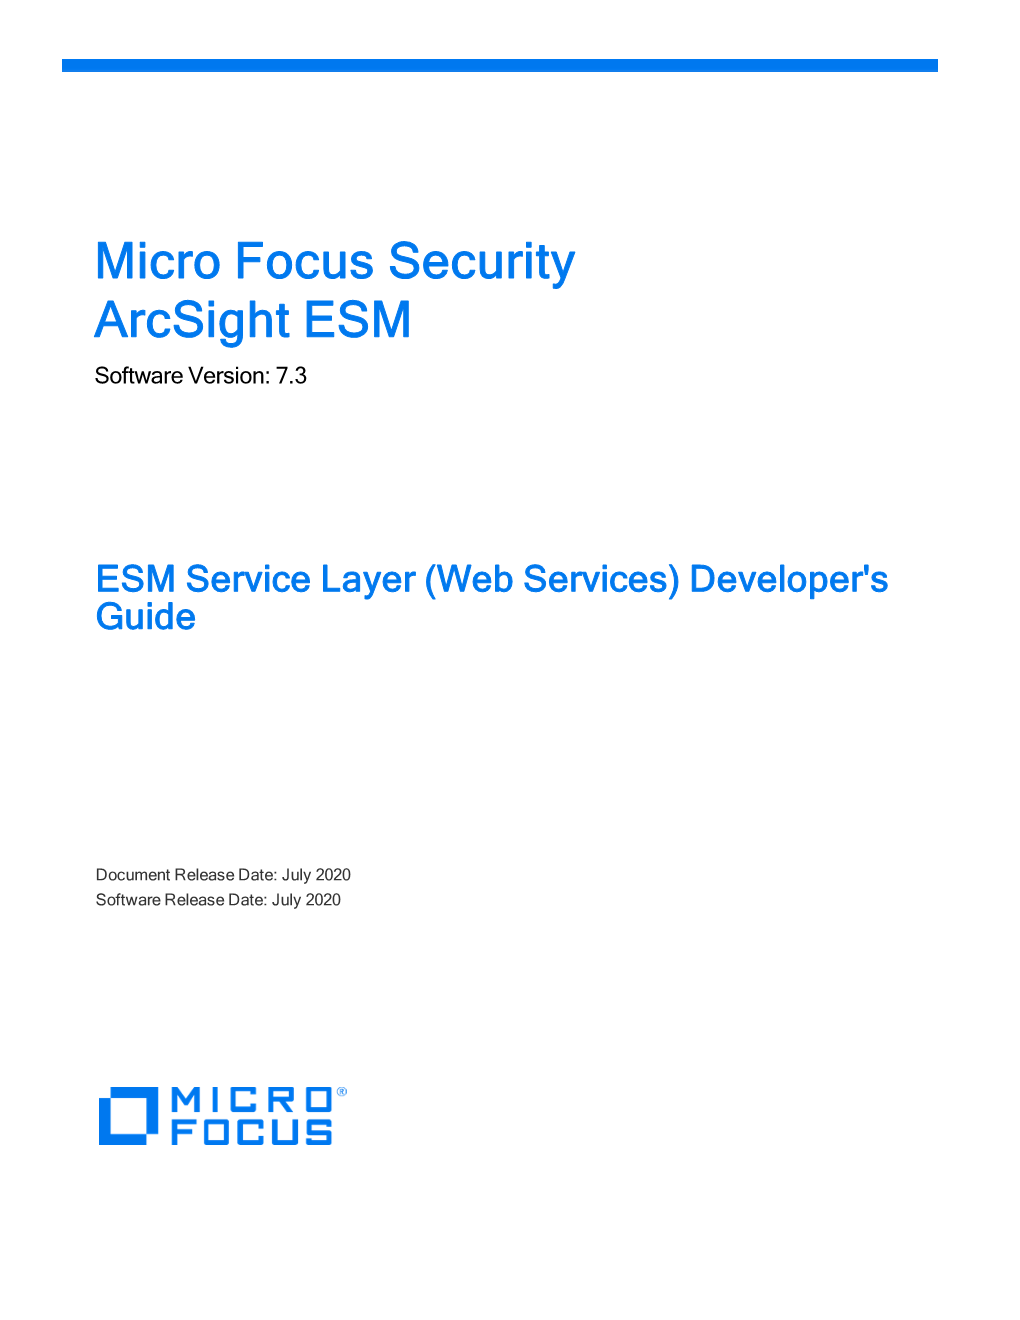 ESM Service Layer Developer's Guide